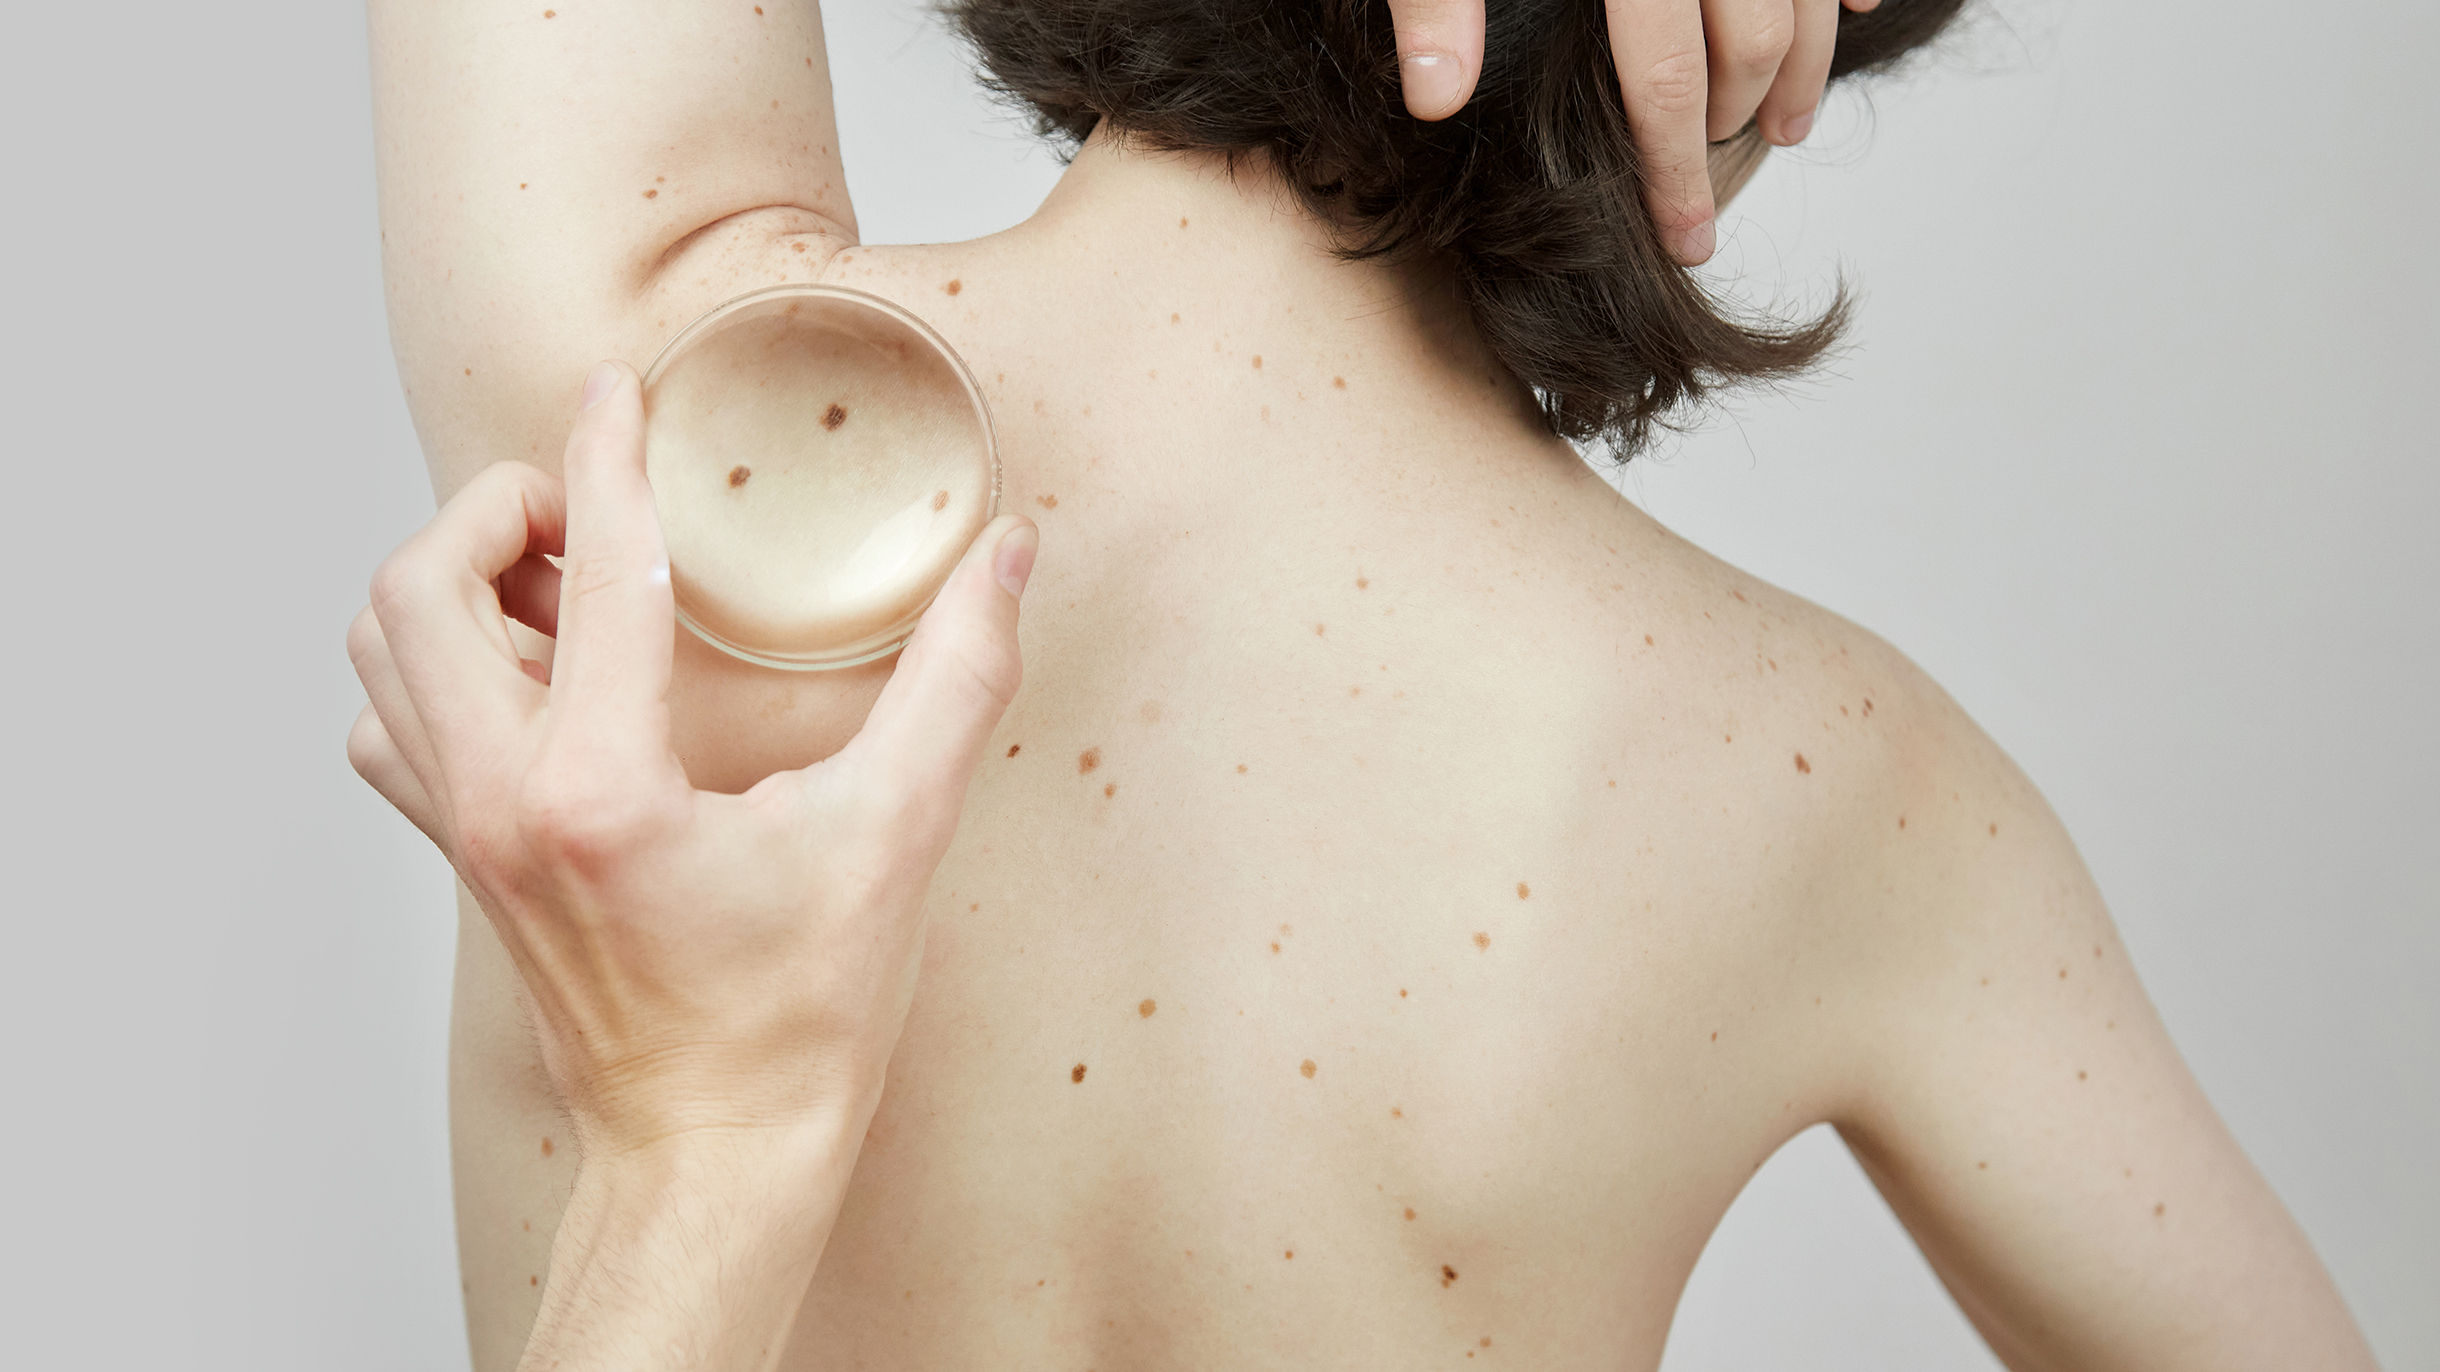 Как распознать рак кожи и где его лечить: советы онколога